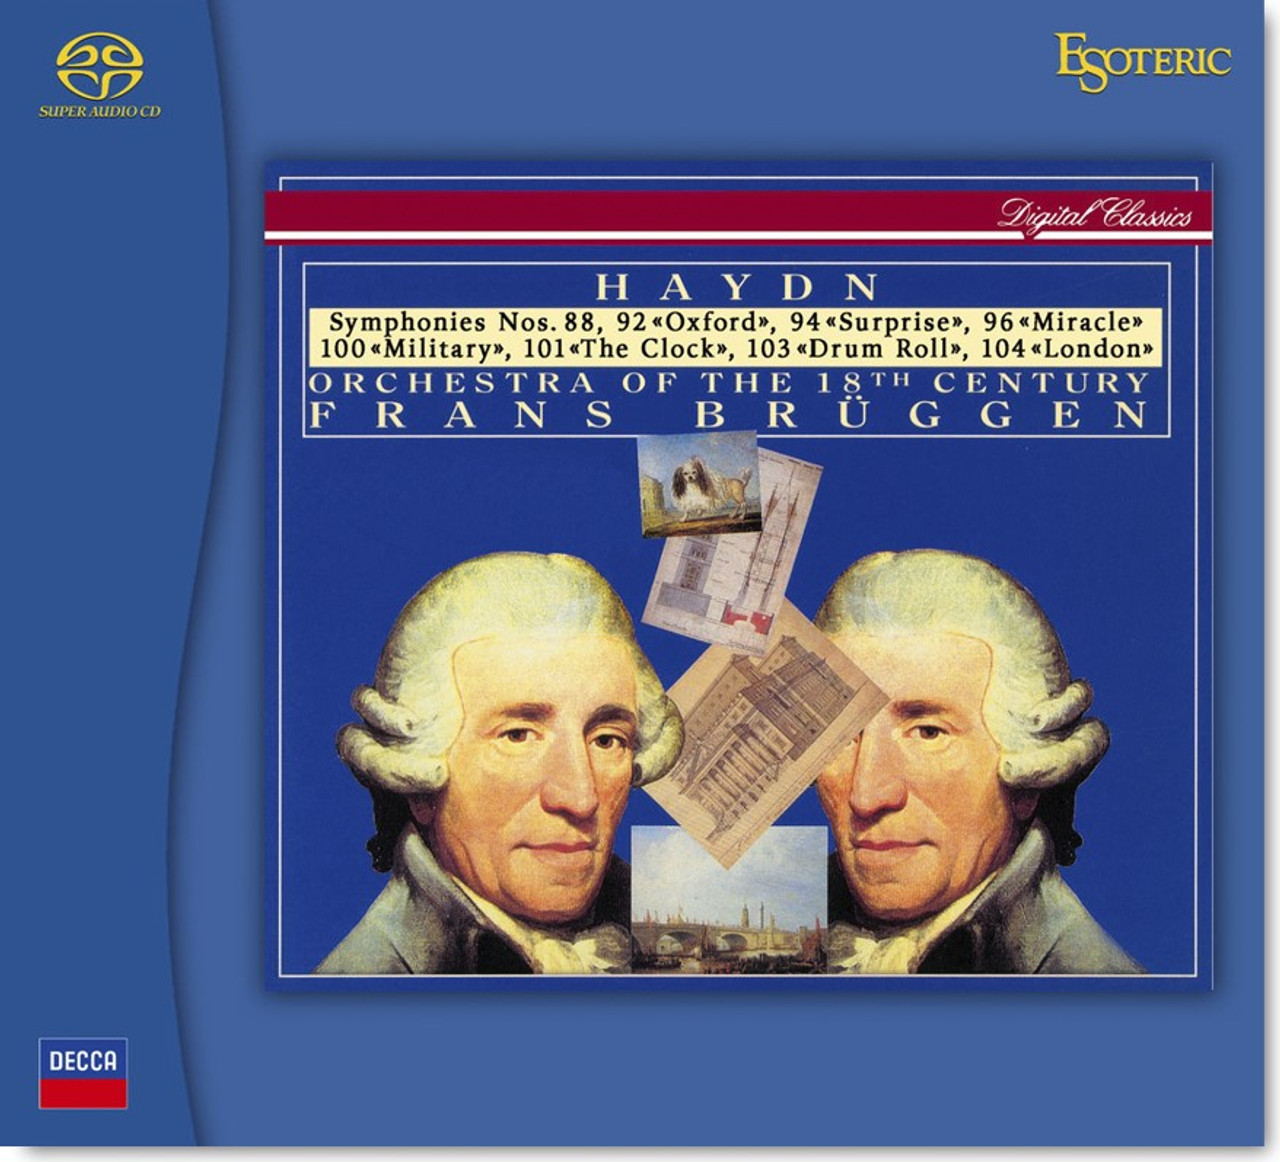 Buy rare ESOTERIC Haydn SACD box